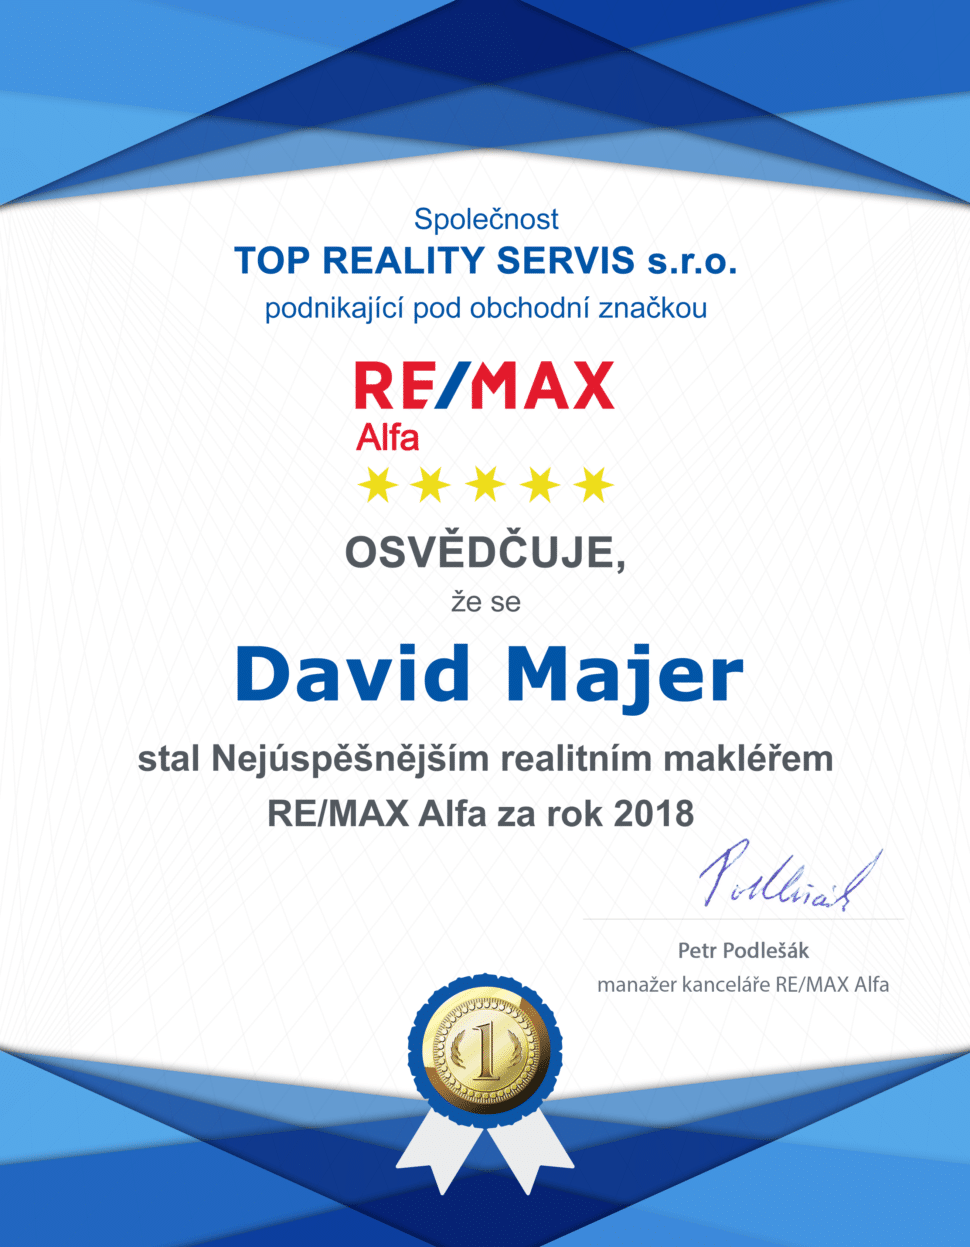 David Majer nejuspesnejsi makler REMAX Alfa 2018